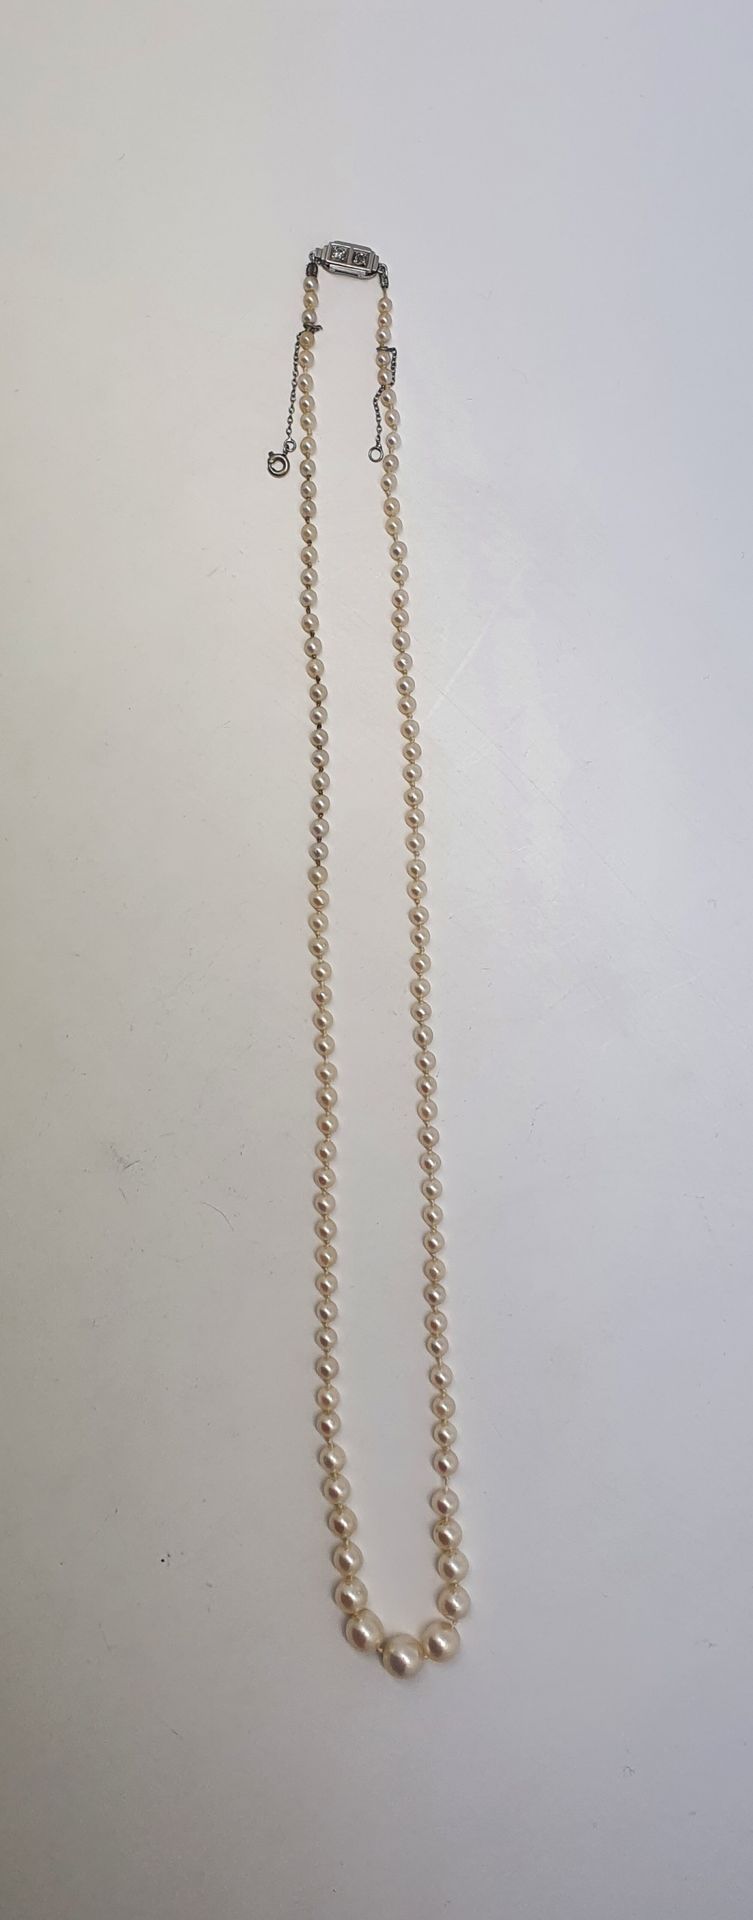 Null 秋季养殖珍珠项链，白金搭扣上点缀着两颗小钻石。附上法国宝石学实验室的证书。